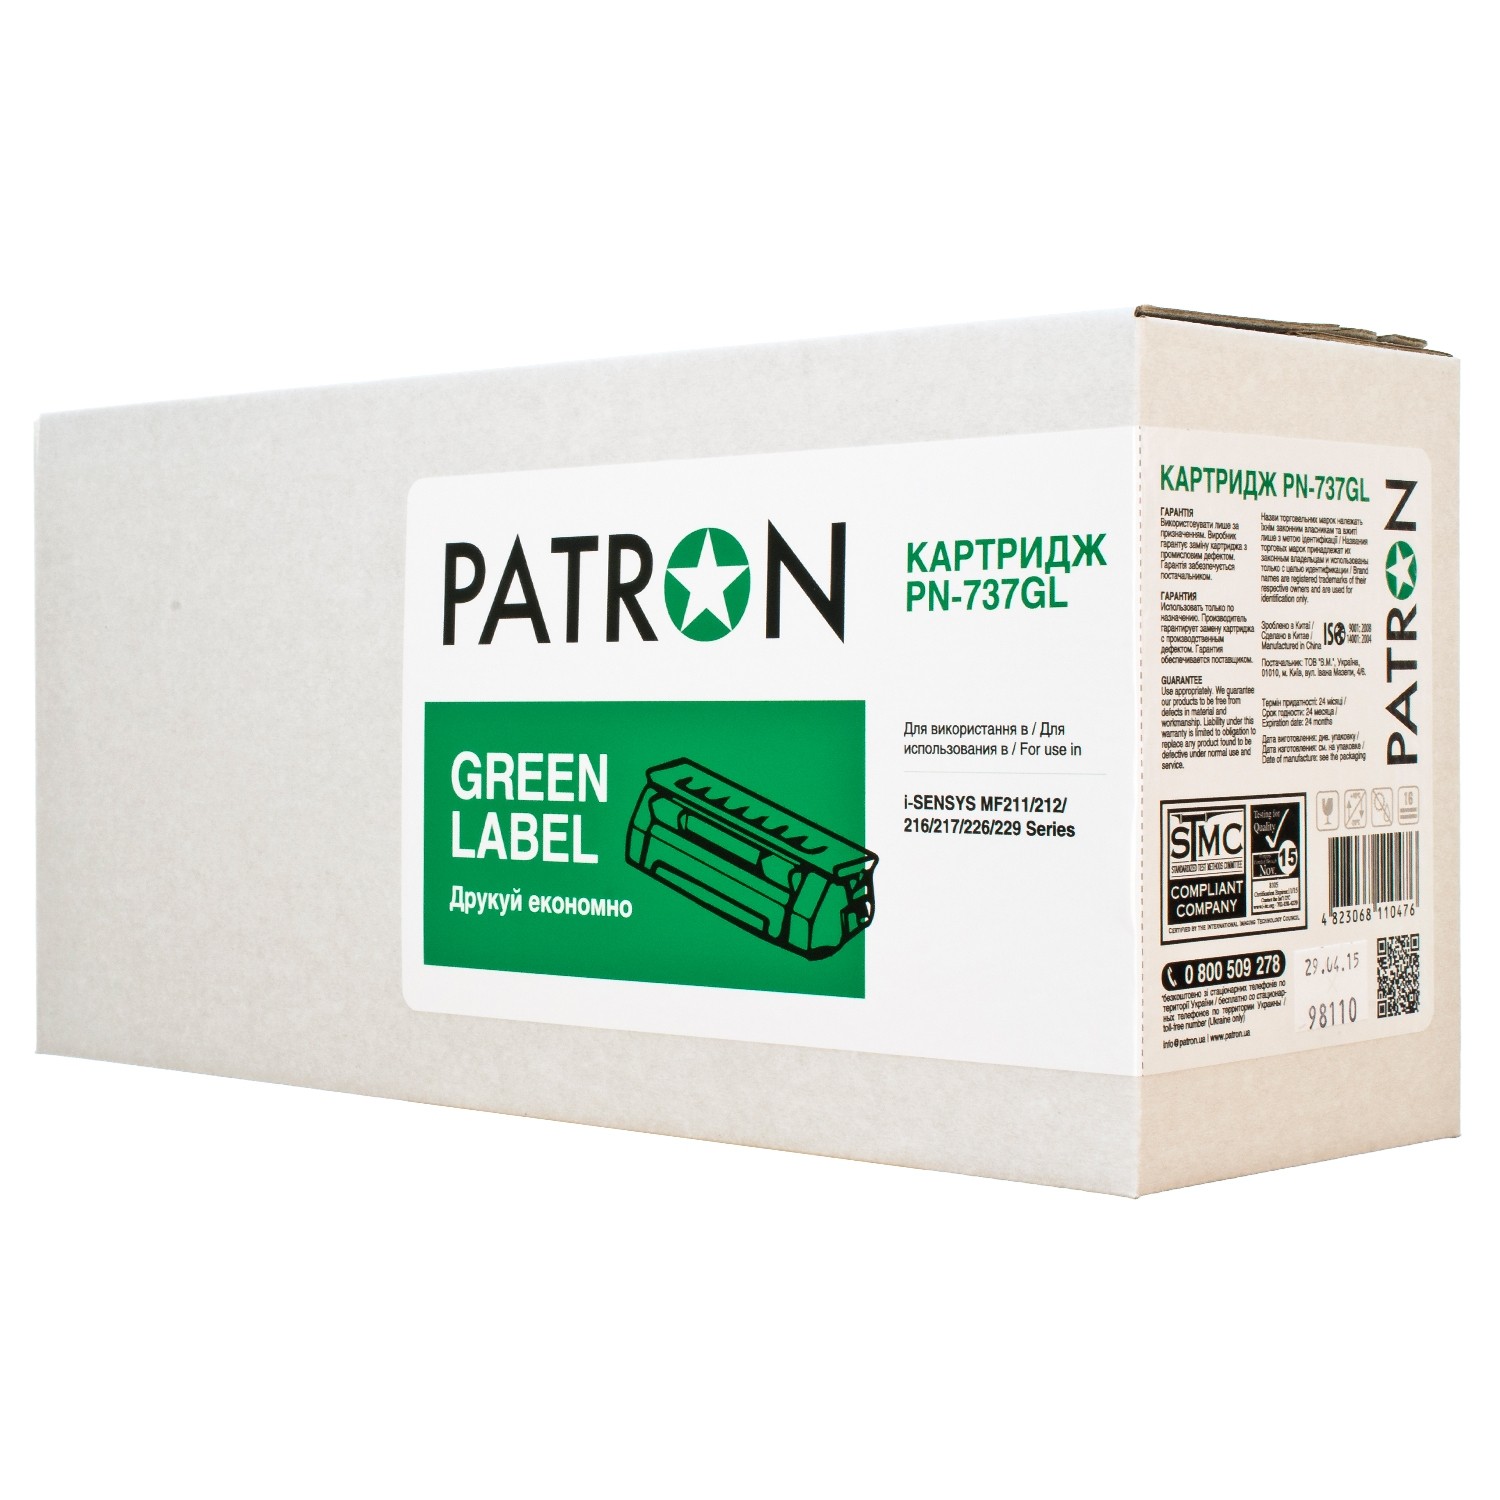 КАРТРИДЖ CANON 737 (PN-737GL) PATRON GREEN Label